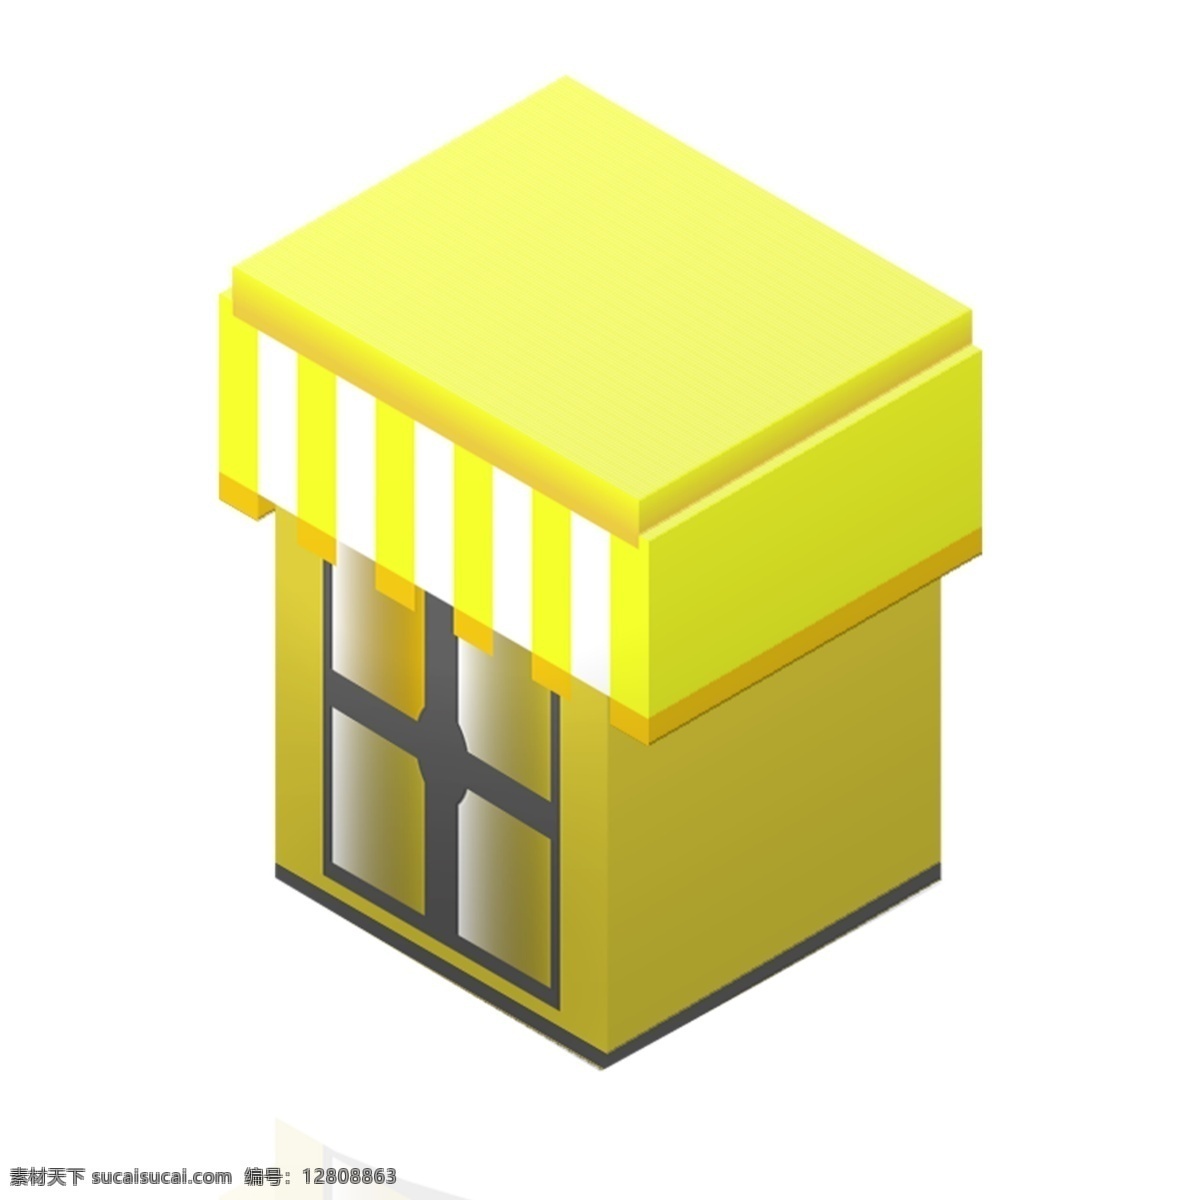 d 黄色 建筑物 建筑 灰色建筑 立体建筑物 立体楼房 插图 2.5d建筑